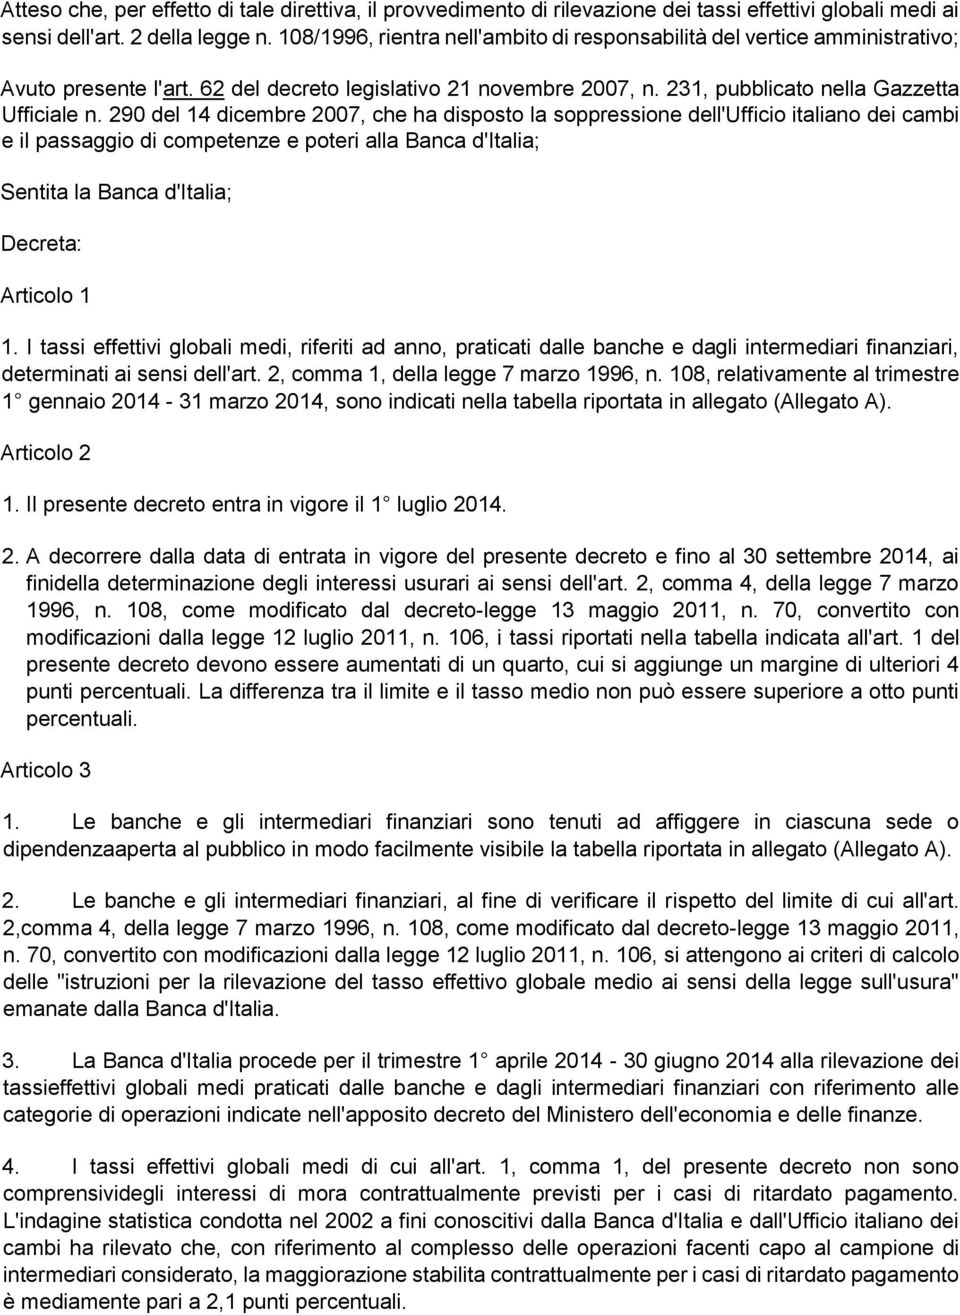 290 del 14 dicembre 2007, che ha disposto la soppressione dell'ufficio italiano dei cambi e il passaggio di competenze e poteri alla Banca d'italia; Sentita la Banca d'italia; Decreta: Articolo 1 1.